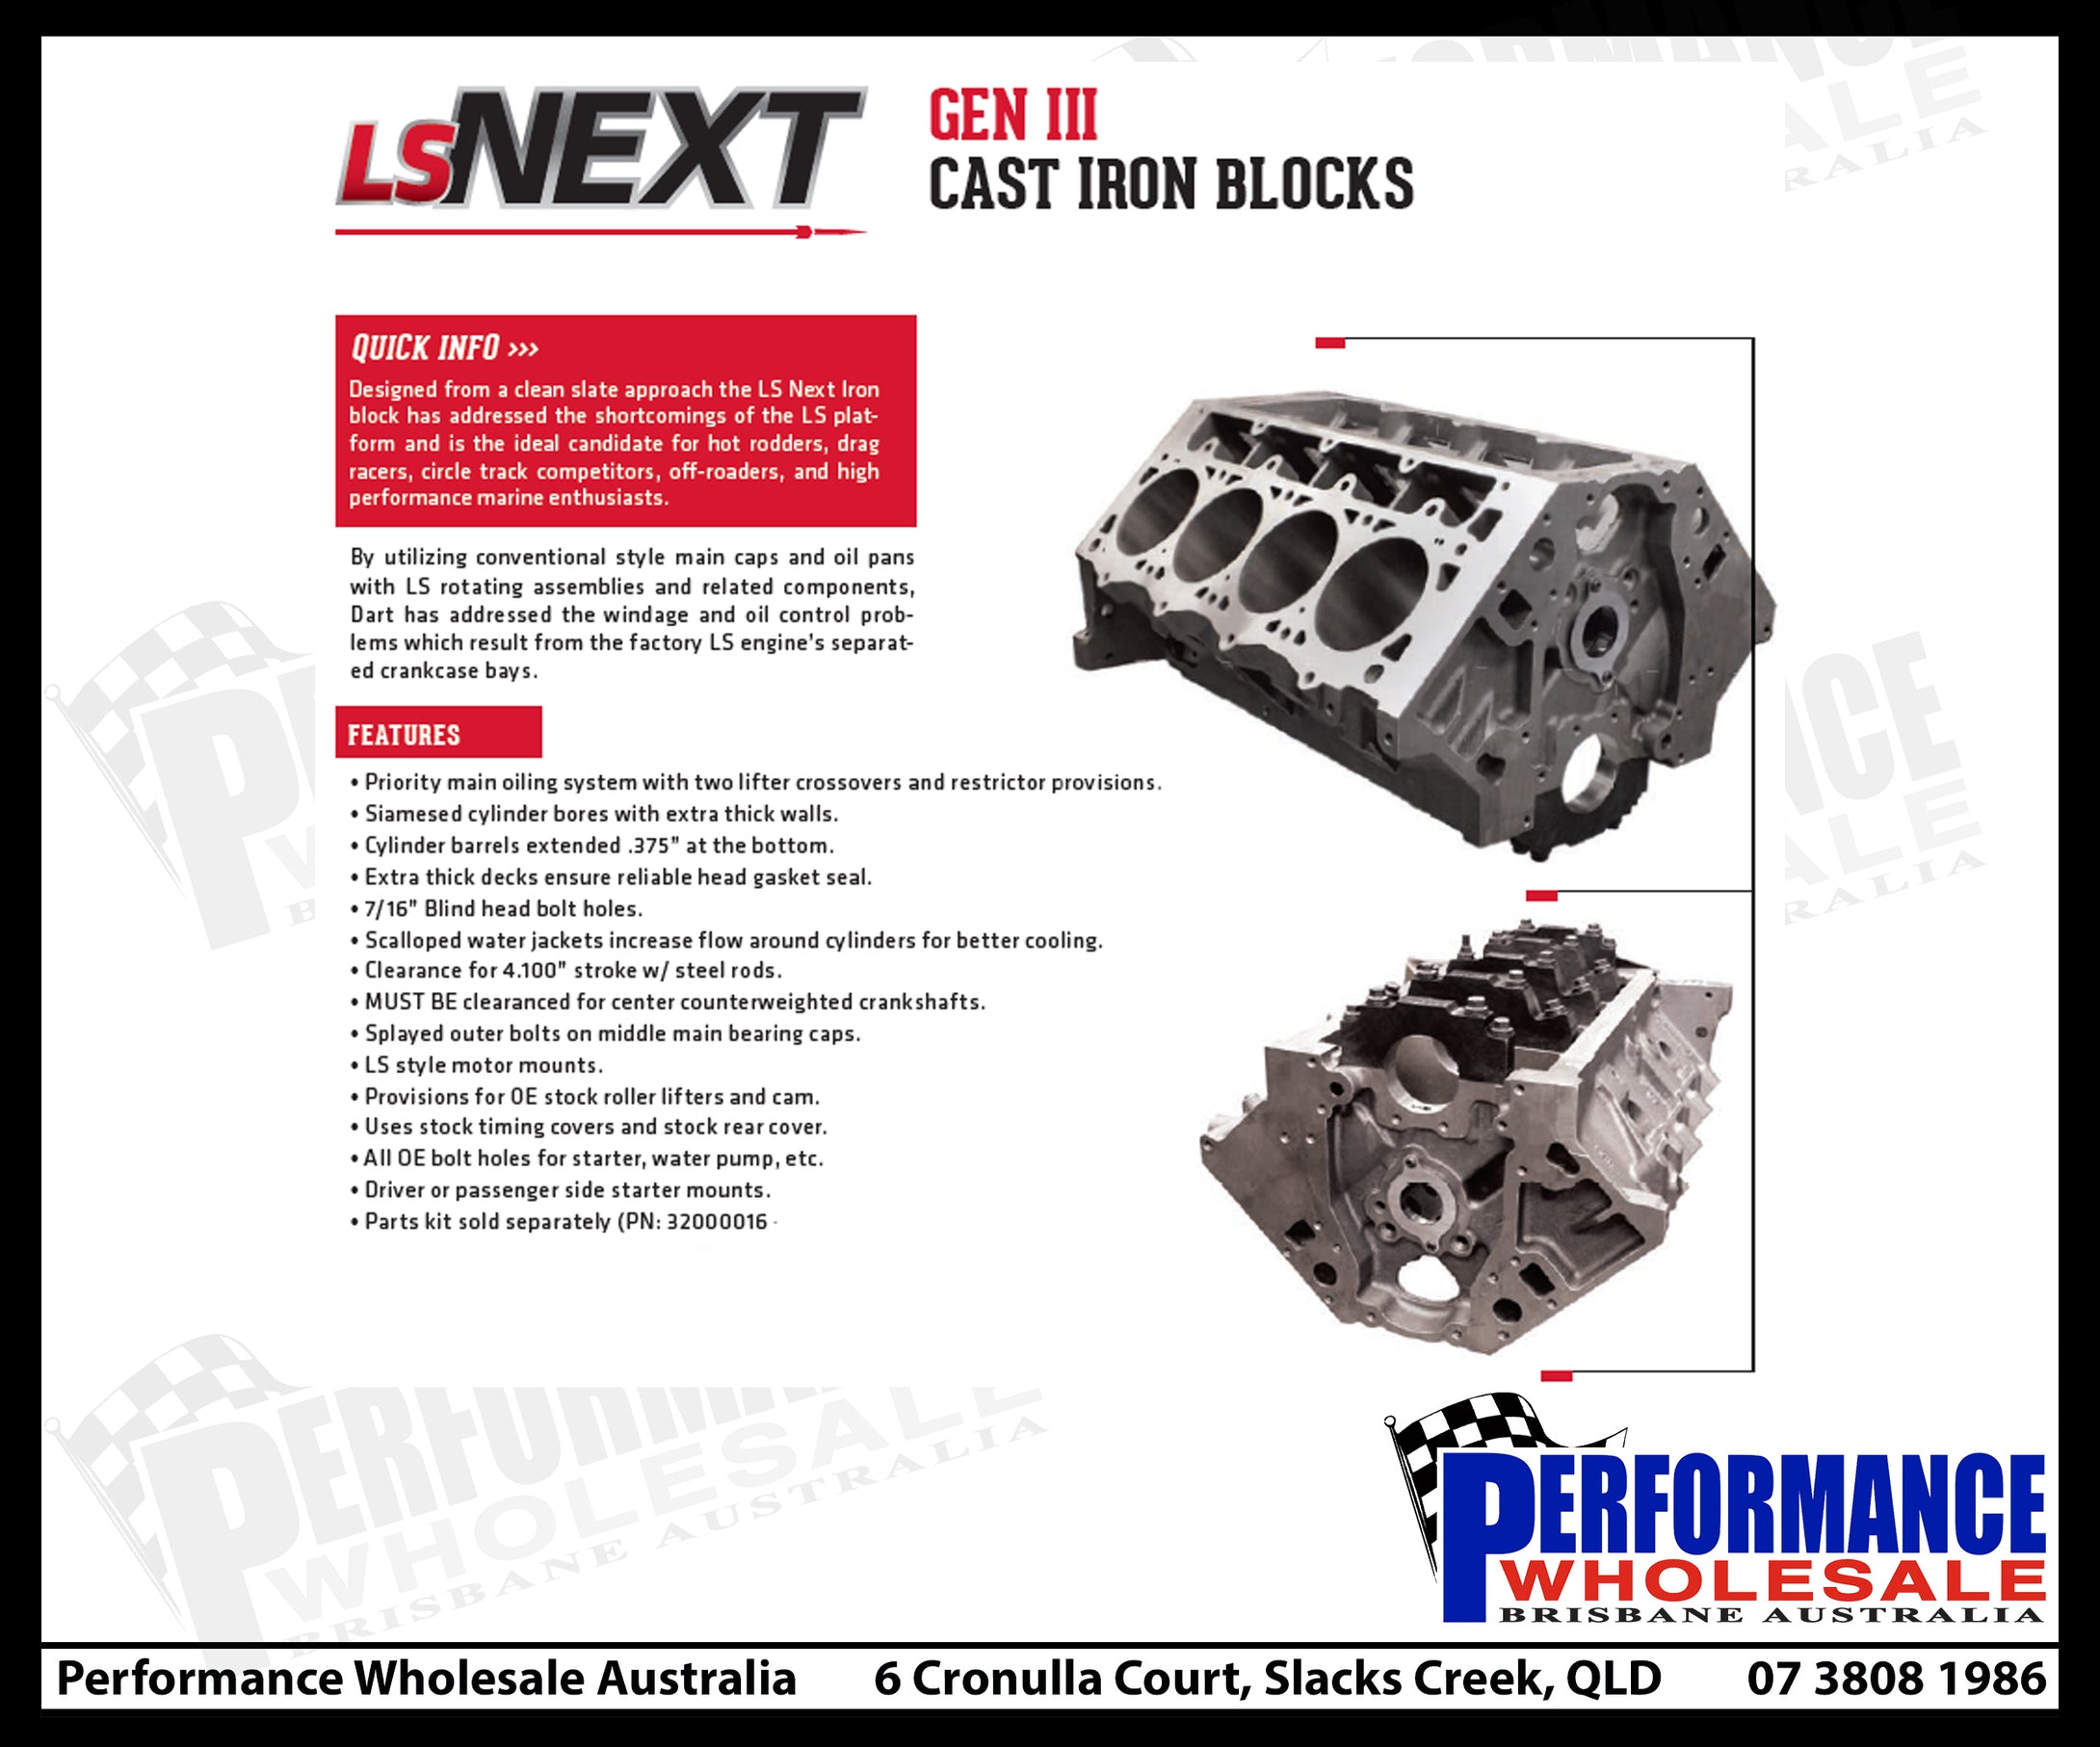 Dart LS NEXT Chevrolet LS Gen III Iron Block – 4.000-4.125 In. Bore, 9.240-9.450 In. Deck